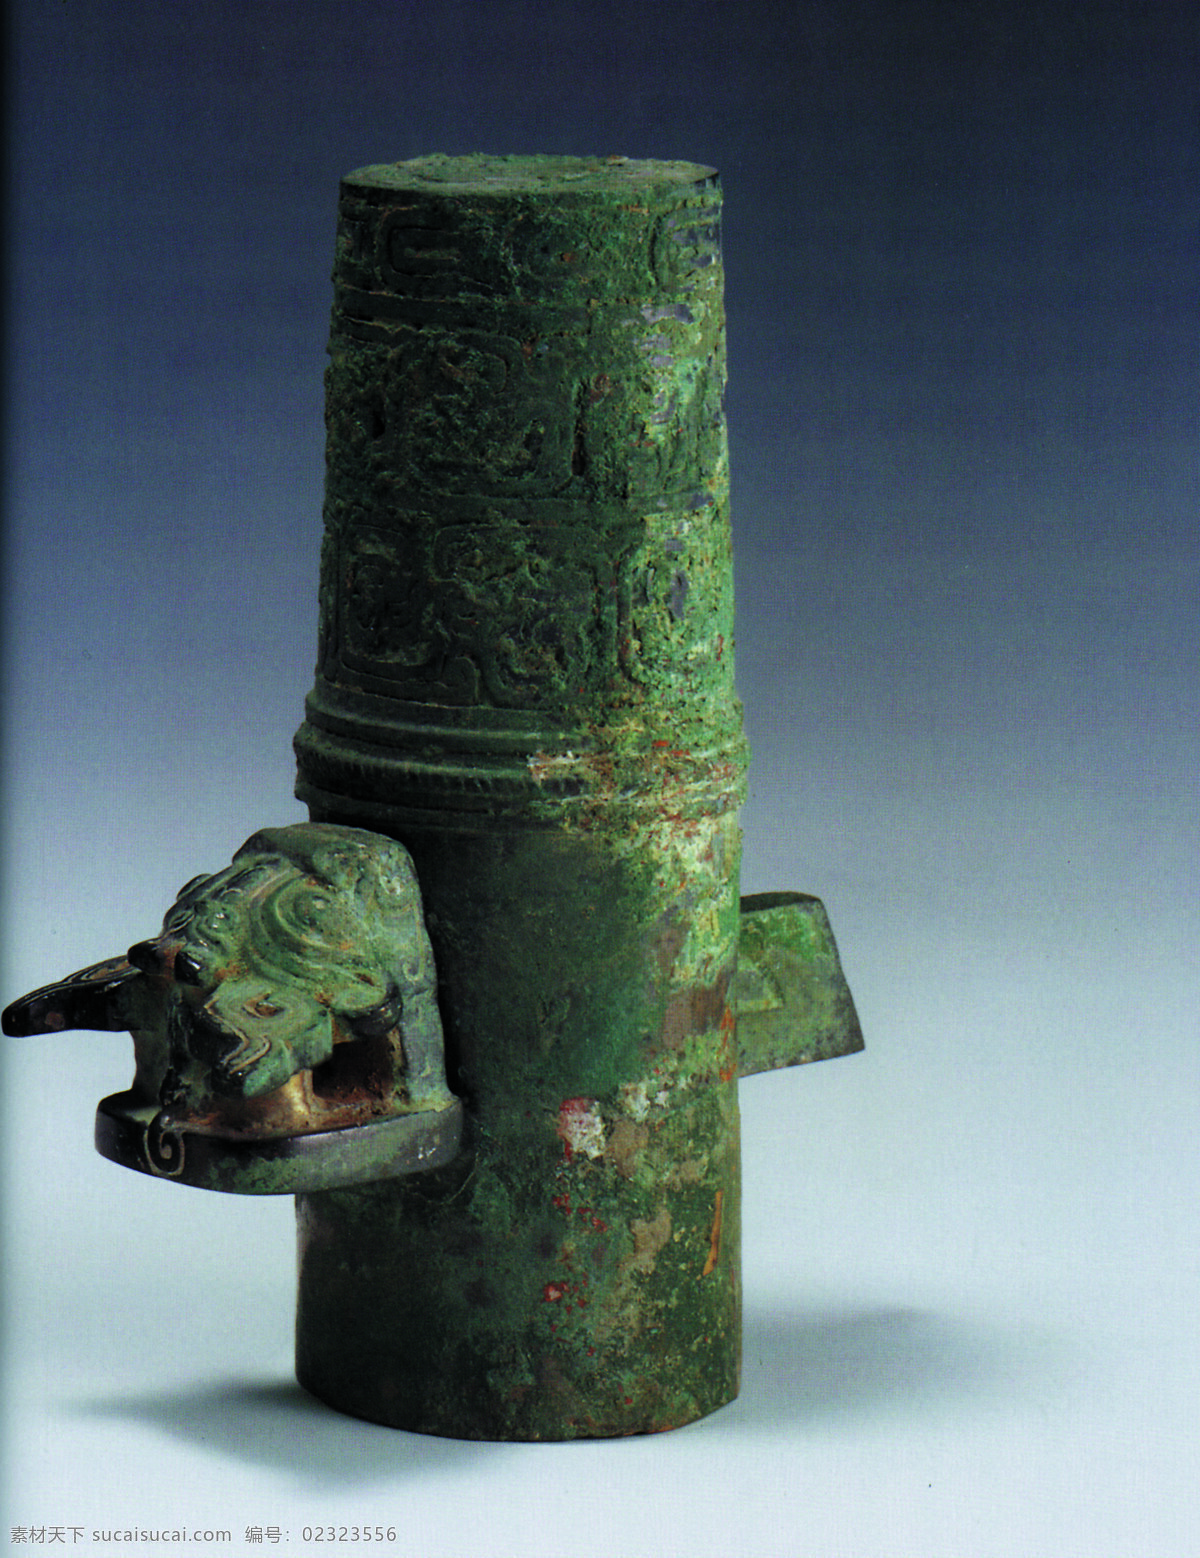 出土文物 瓷器 鼎 古董 陶瓷 艺术品 中华艺术绘画 壶 盖 文化艺术